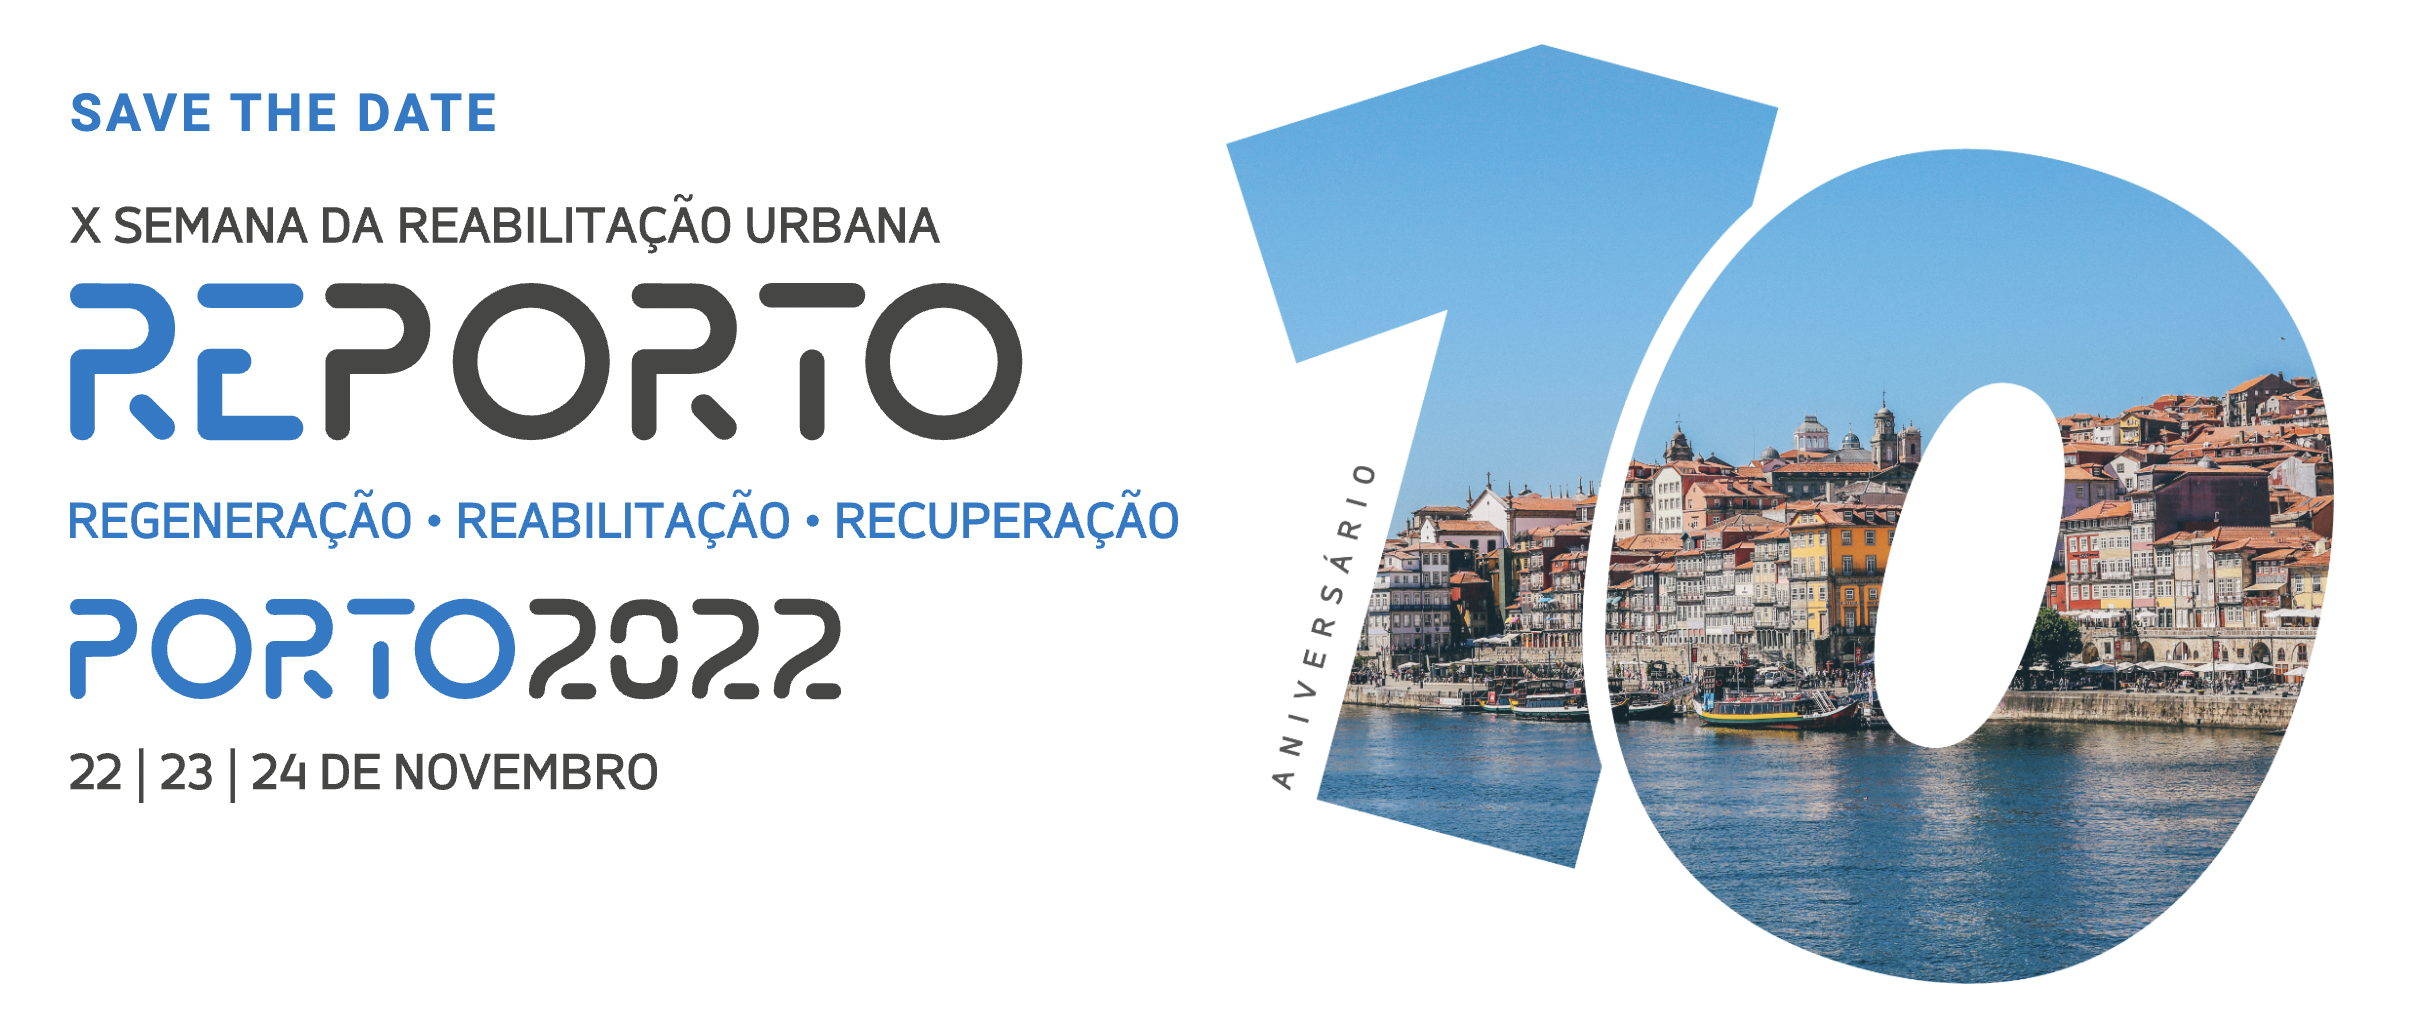 X Semana da Reabilitação Urbana do Porto